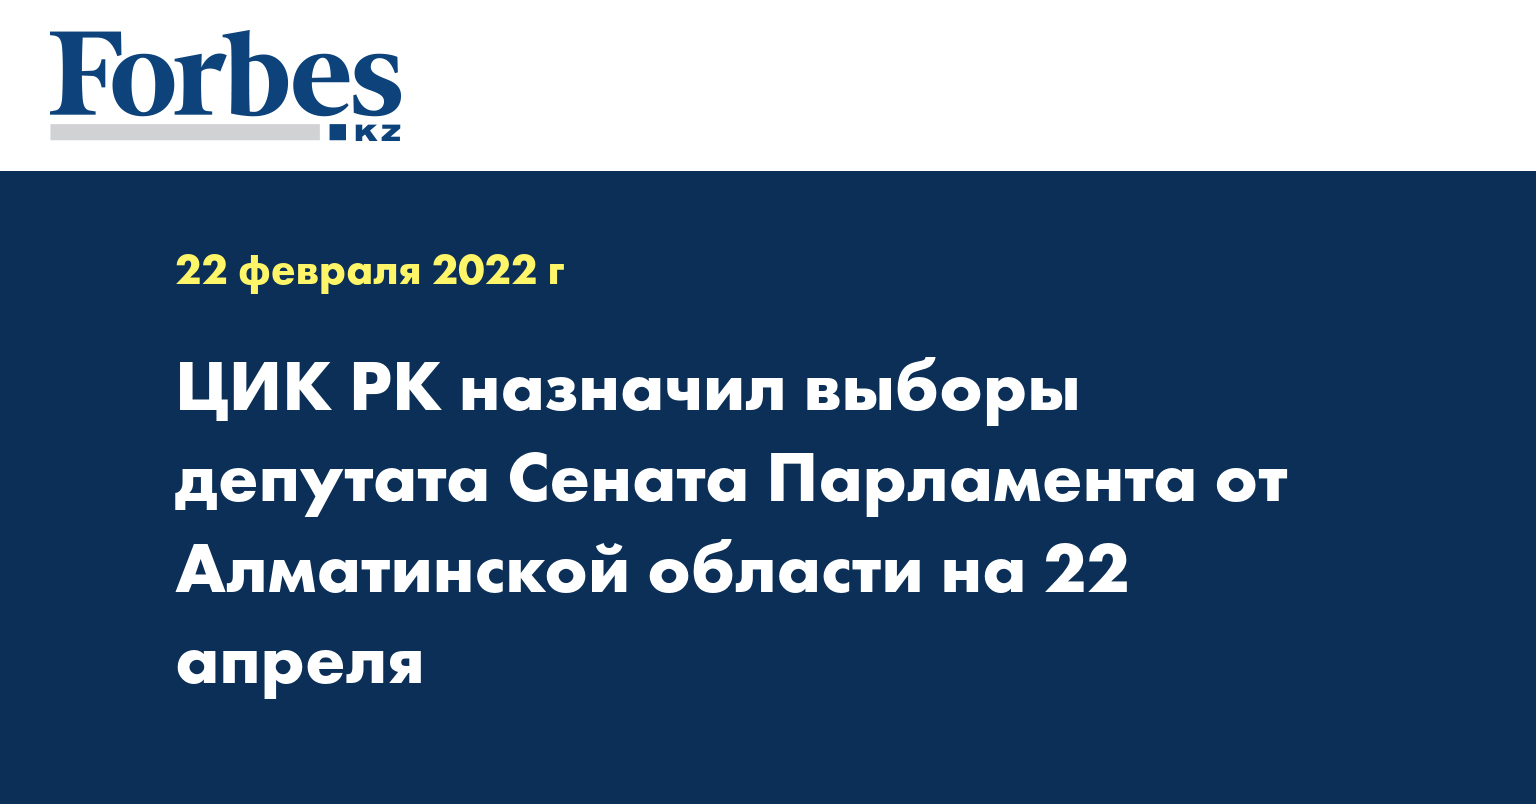 ЦИК РК назначил выборы депутата Сената Парламента от Алматинской области на 22 апреля